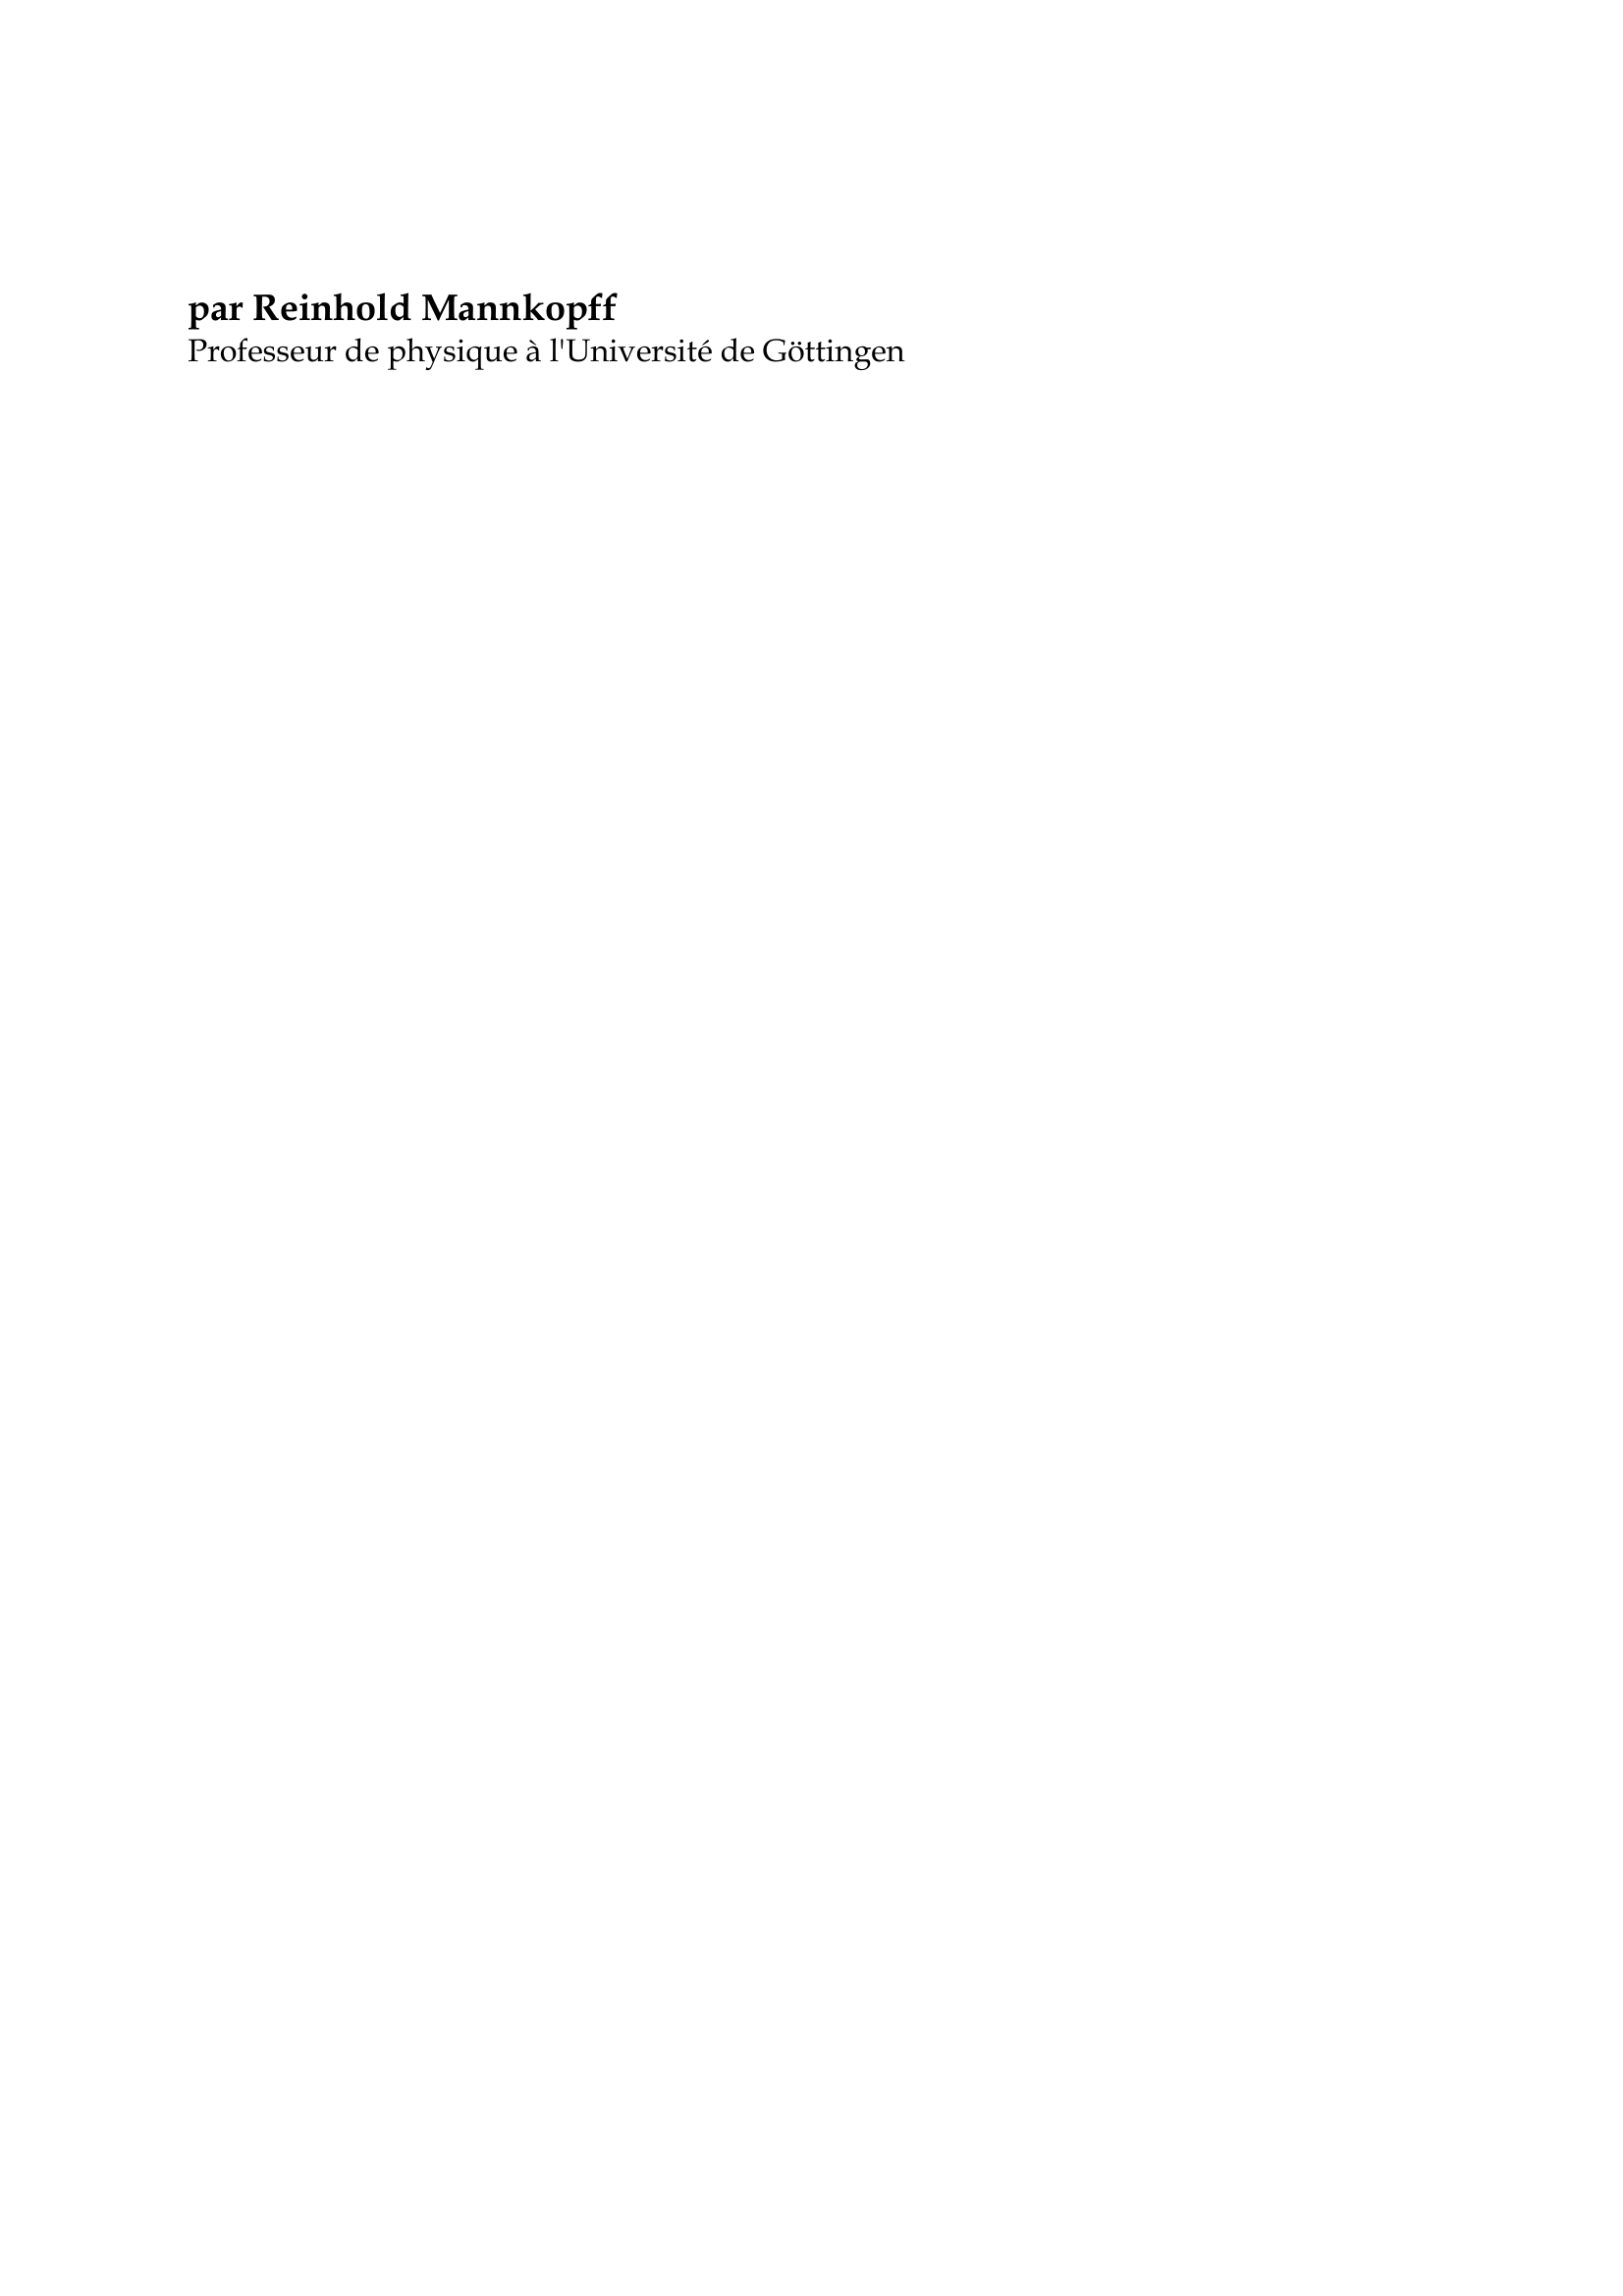 Prévisualisation du document Werner von Siemens

par Reinhold Mannkopff
Professeur de physique à l'Université de